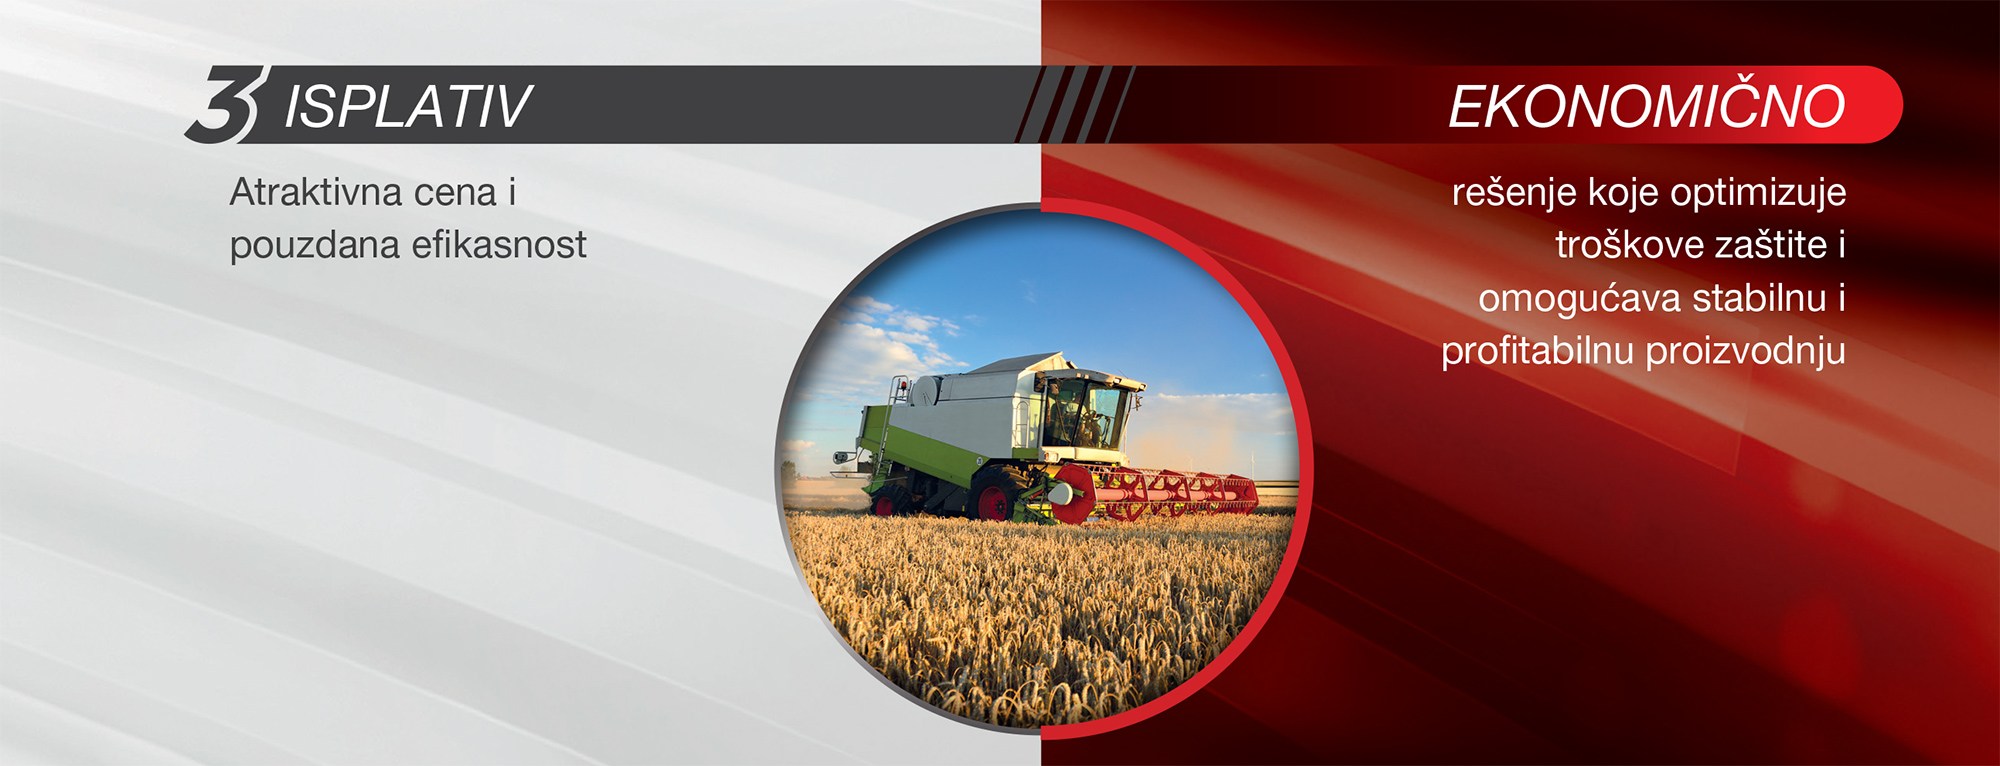 traktor-u-polju-koristi-duett-turbo-i-omogucava-profitabilnu-proizvodnju